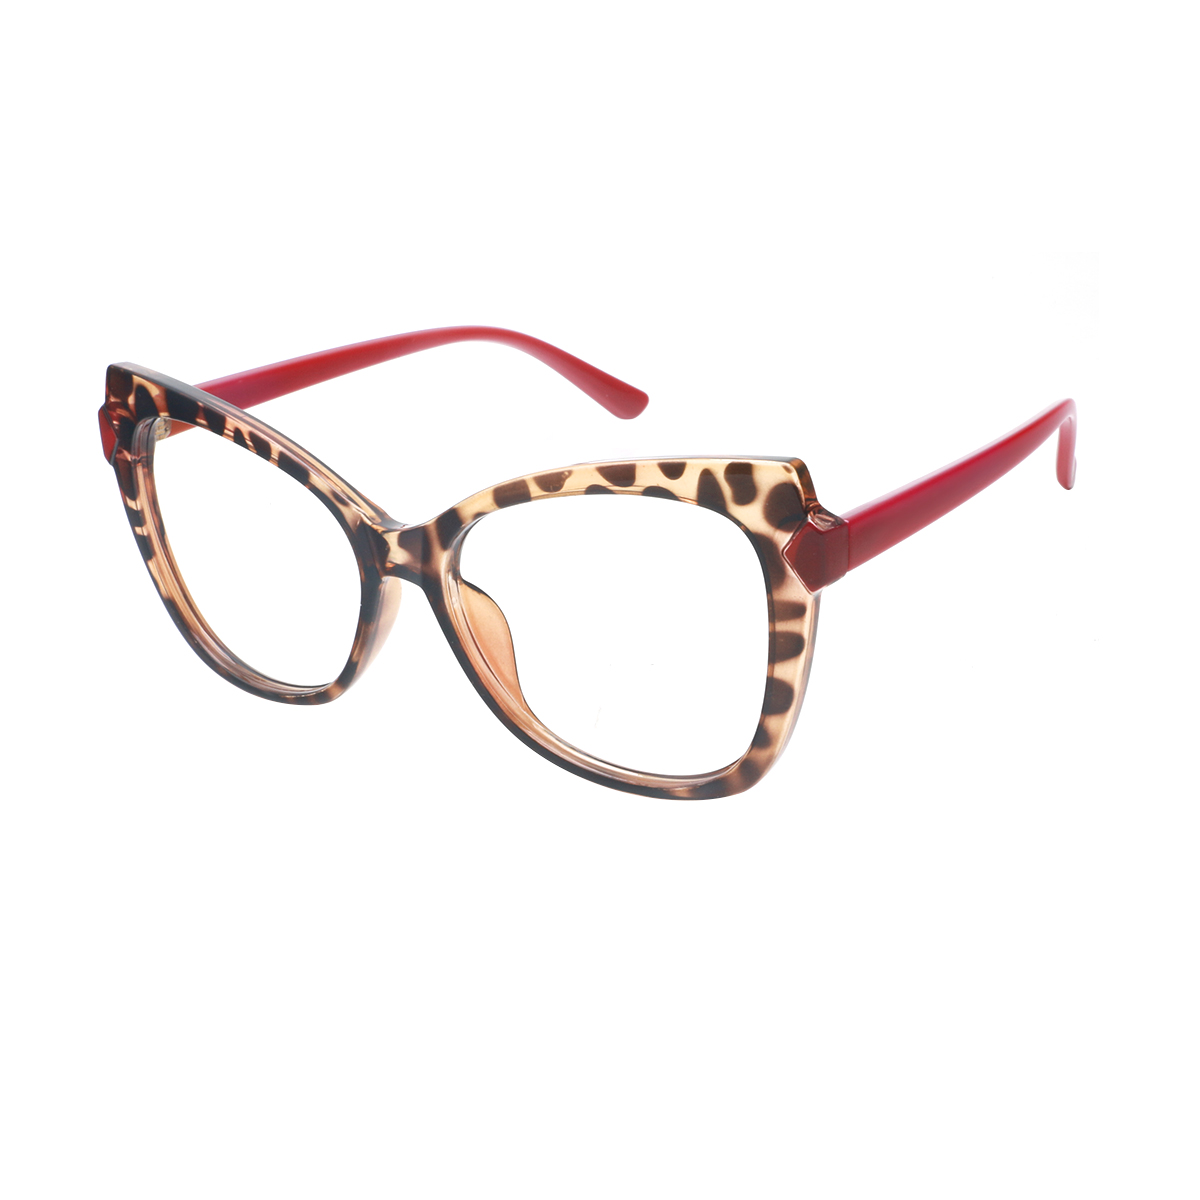 Alazir - Cat-eye Demi Reading Glasses for Women